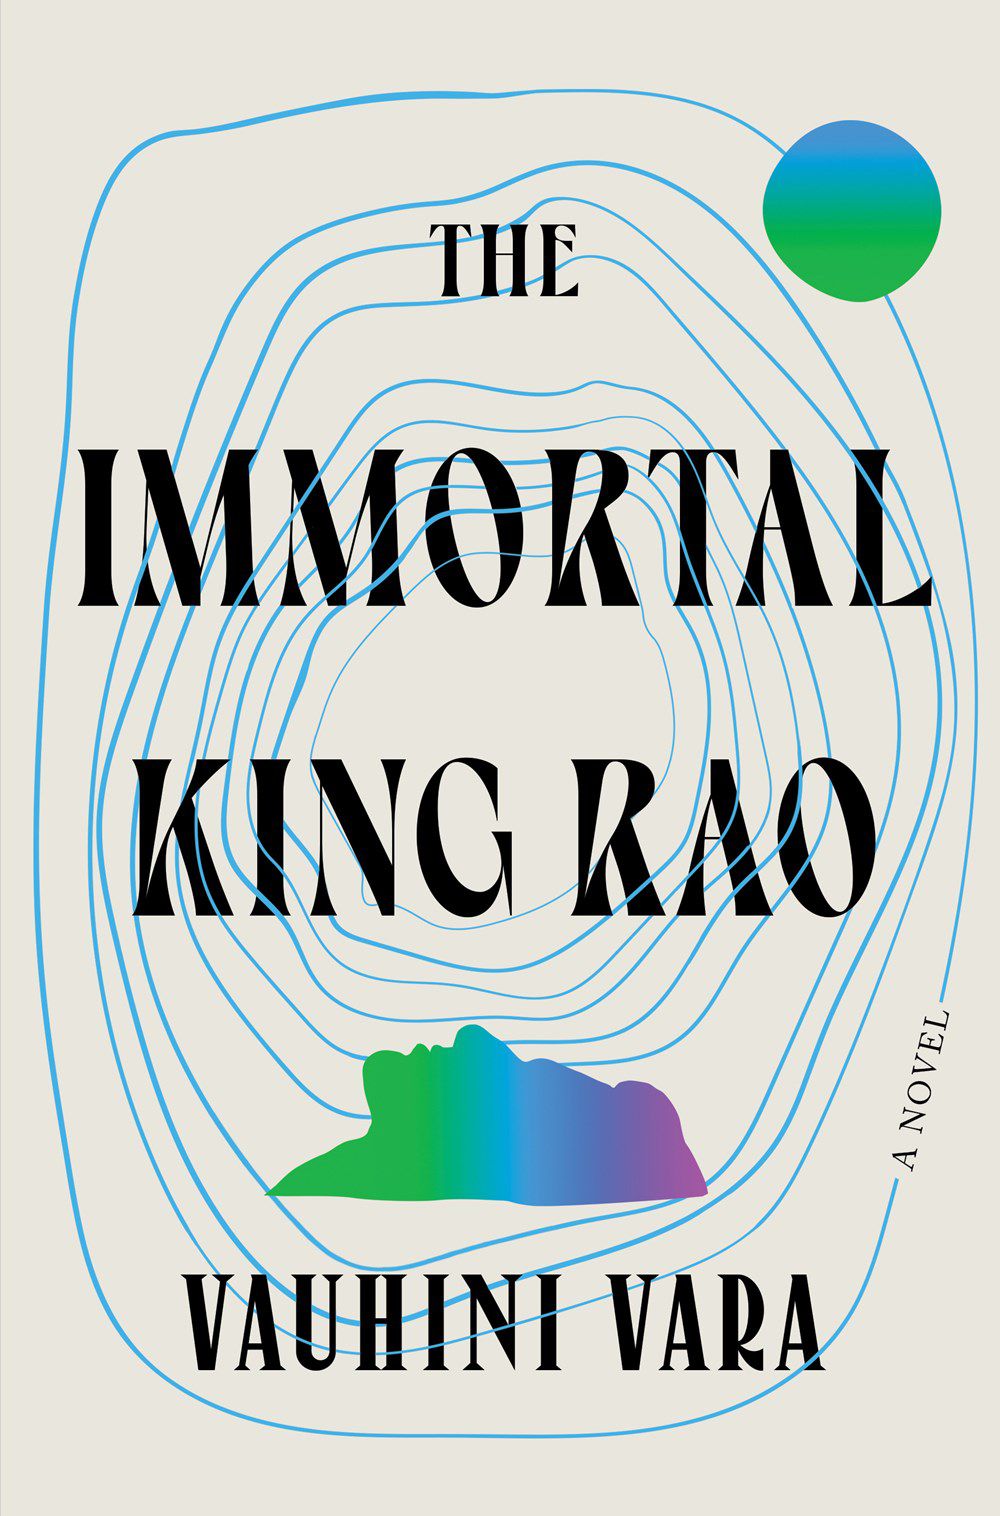 La copertina di The Immortal King Rao, con un gruppo di cerchi concentrici irregolari e una silhouette rivolta verso l'alto.